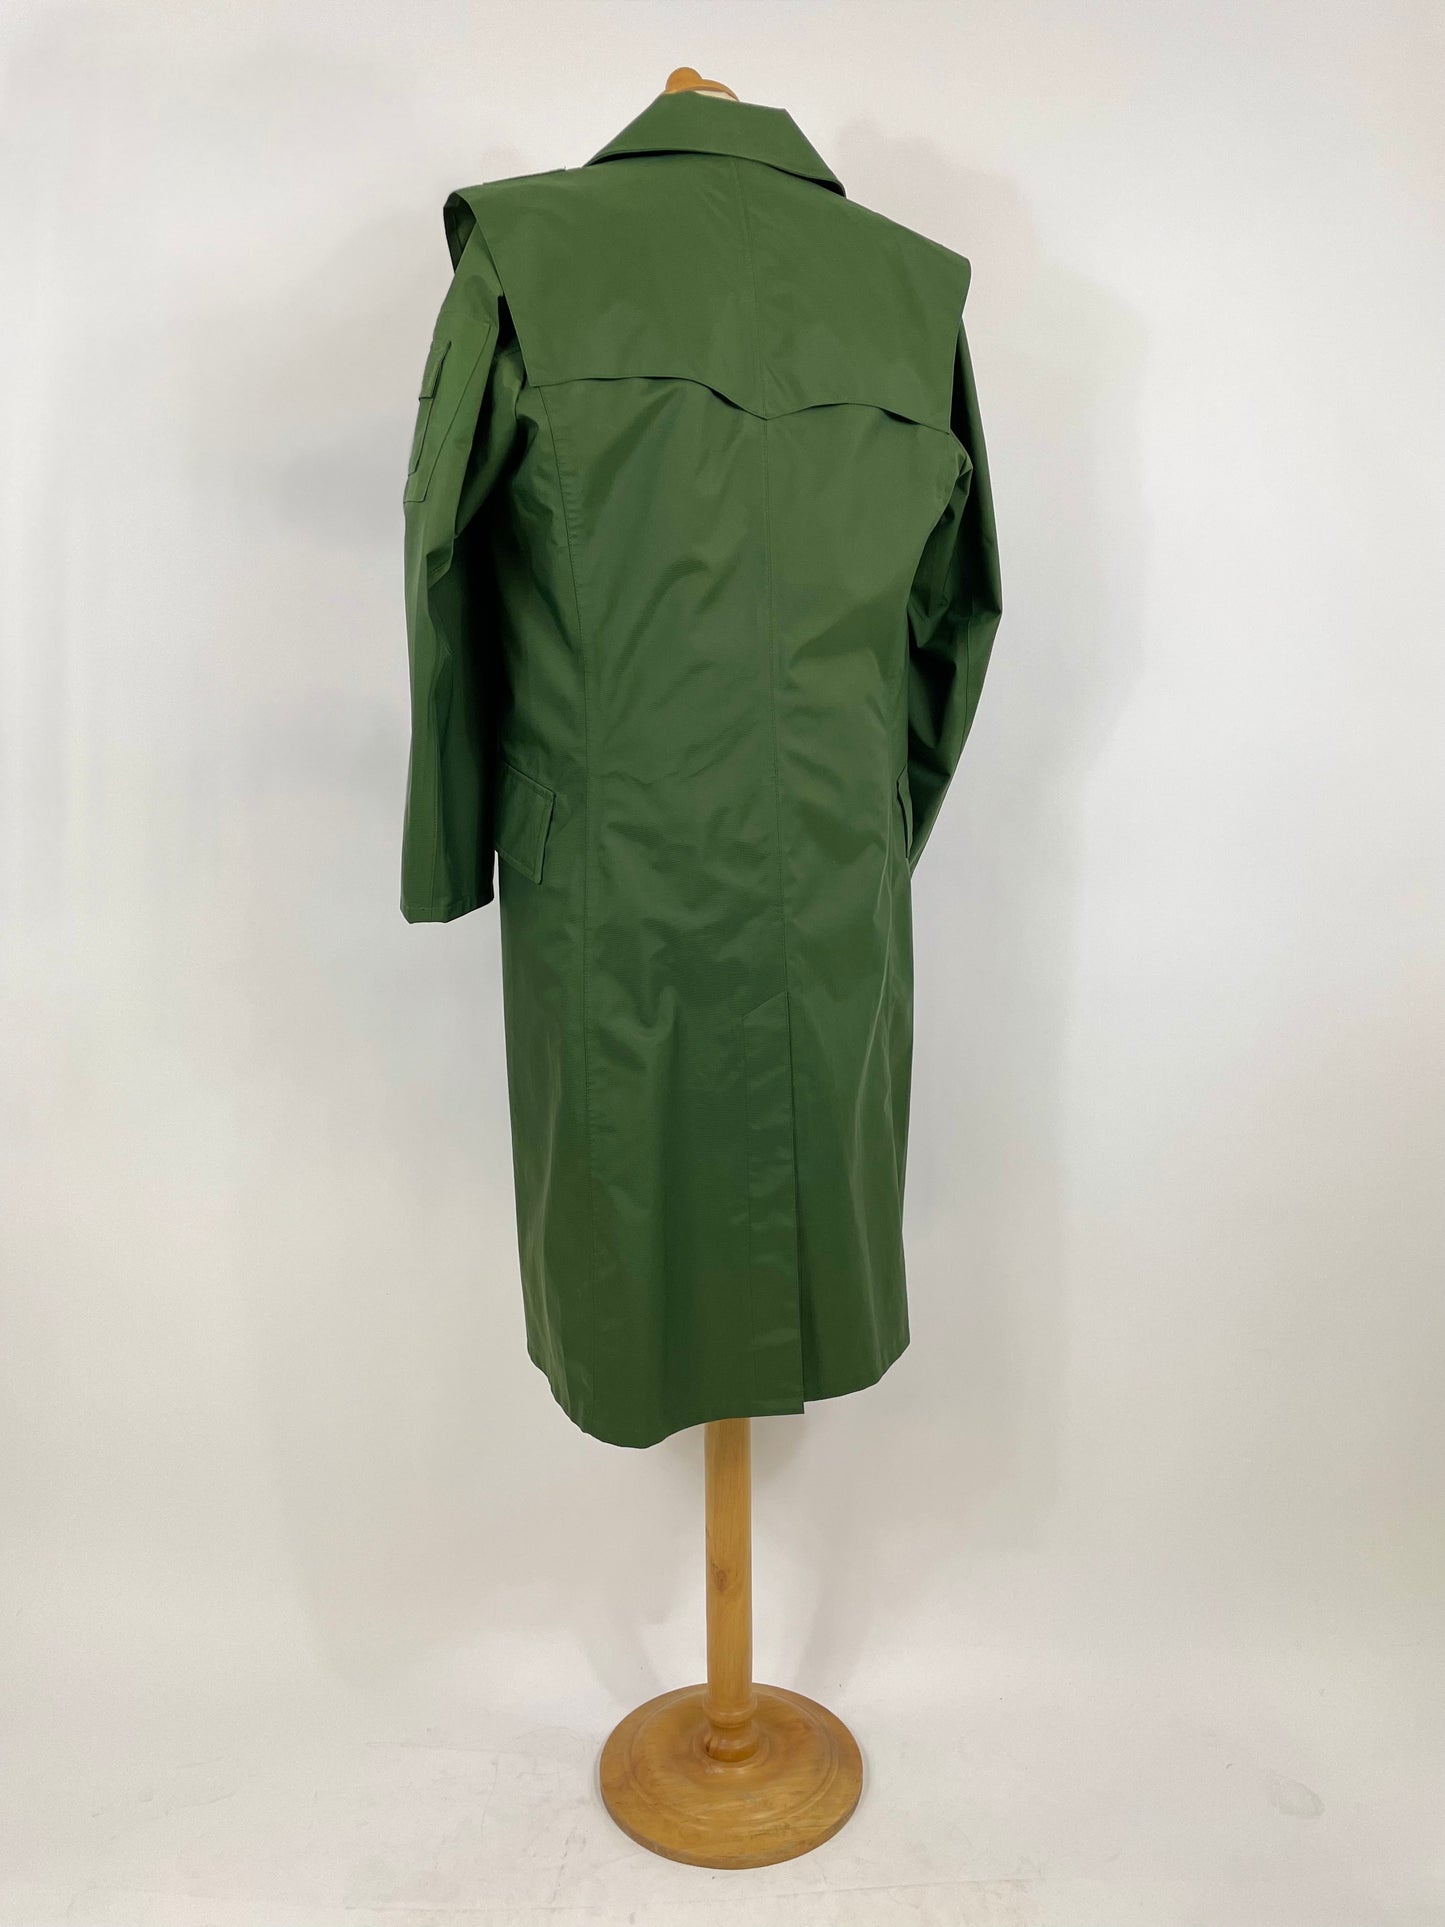 Original Polizia Tedesca Trench coat Kaki 1990s